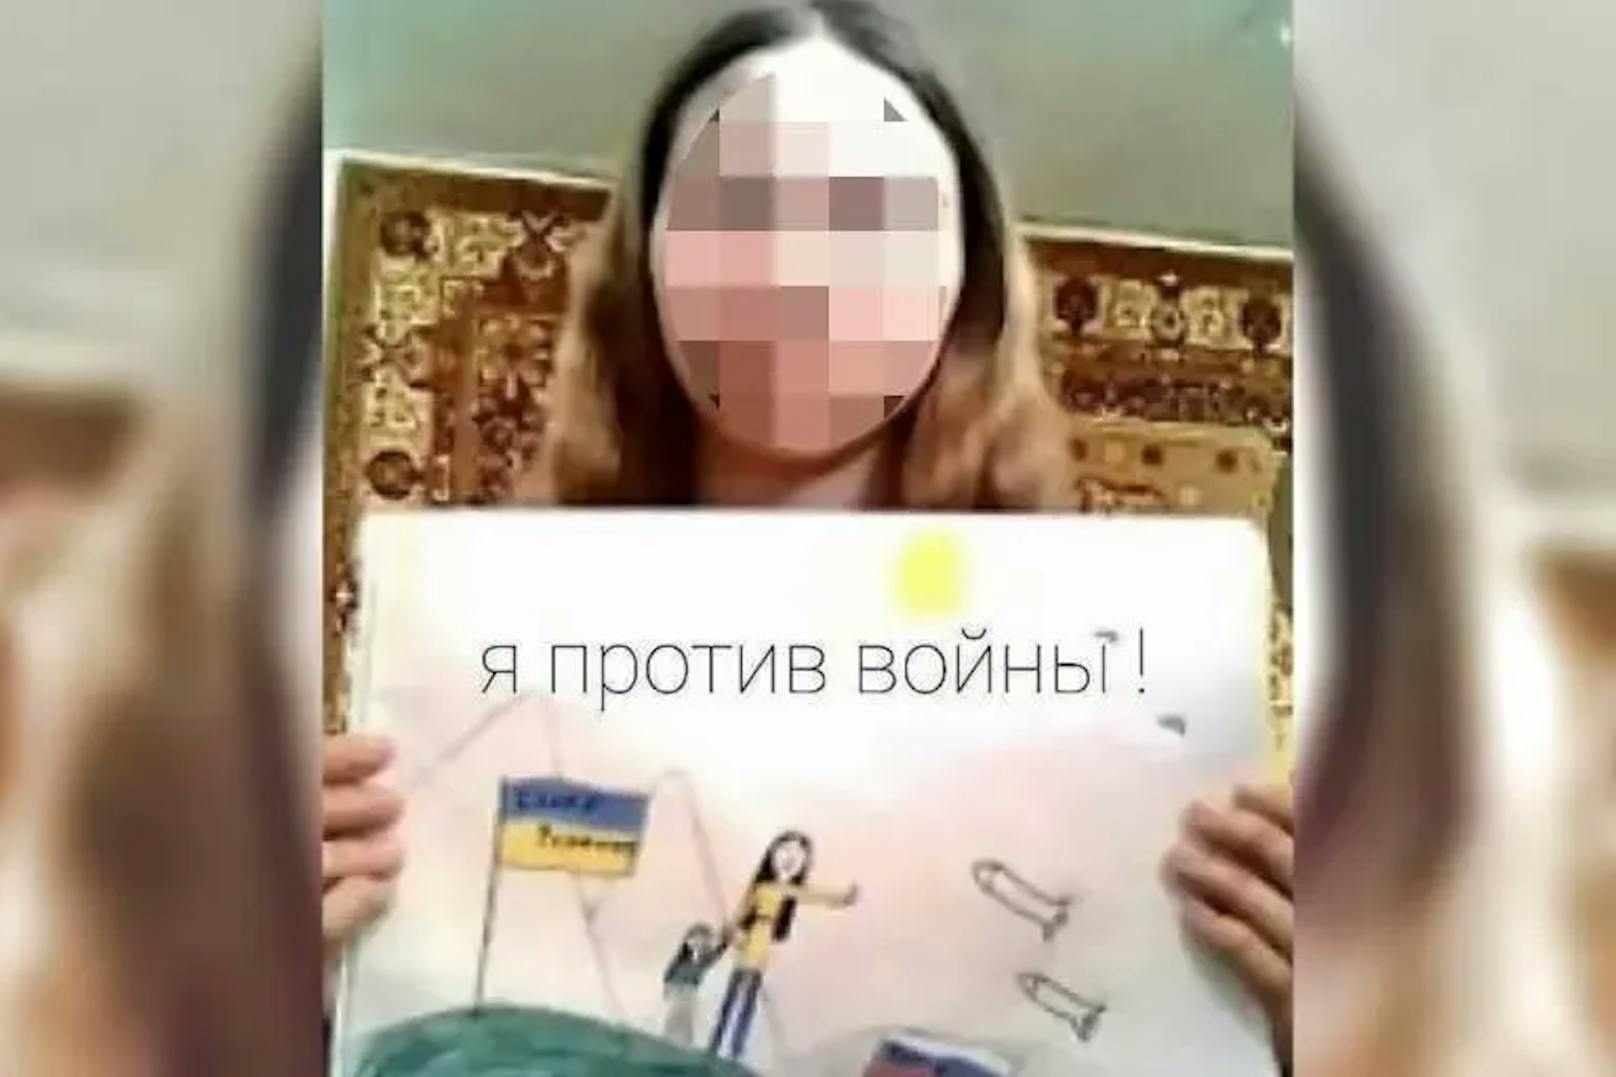 Russland: Mädchen im Heim, Vater bittet um Todesstrafe